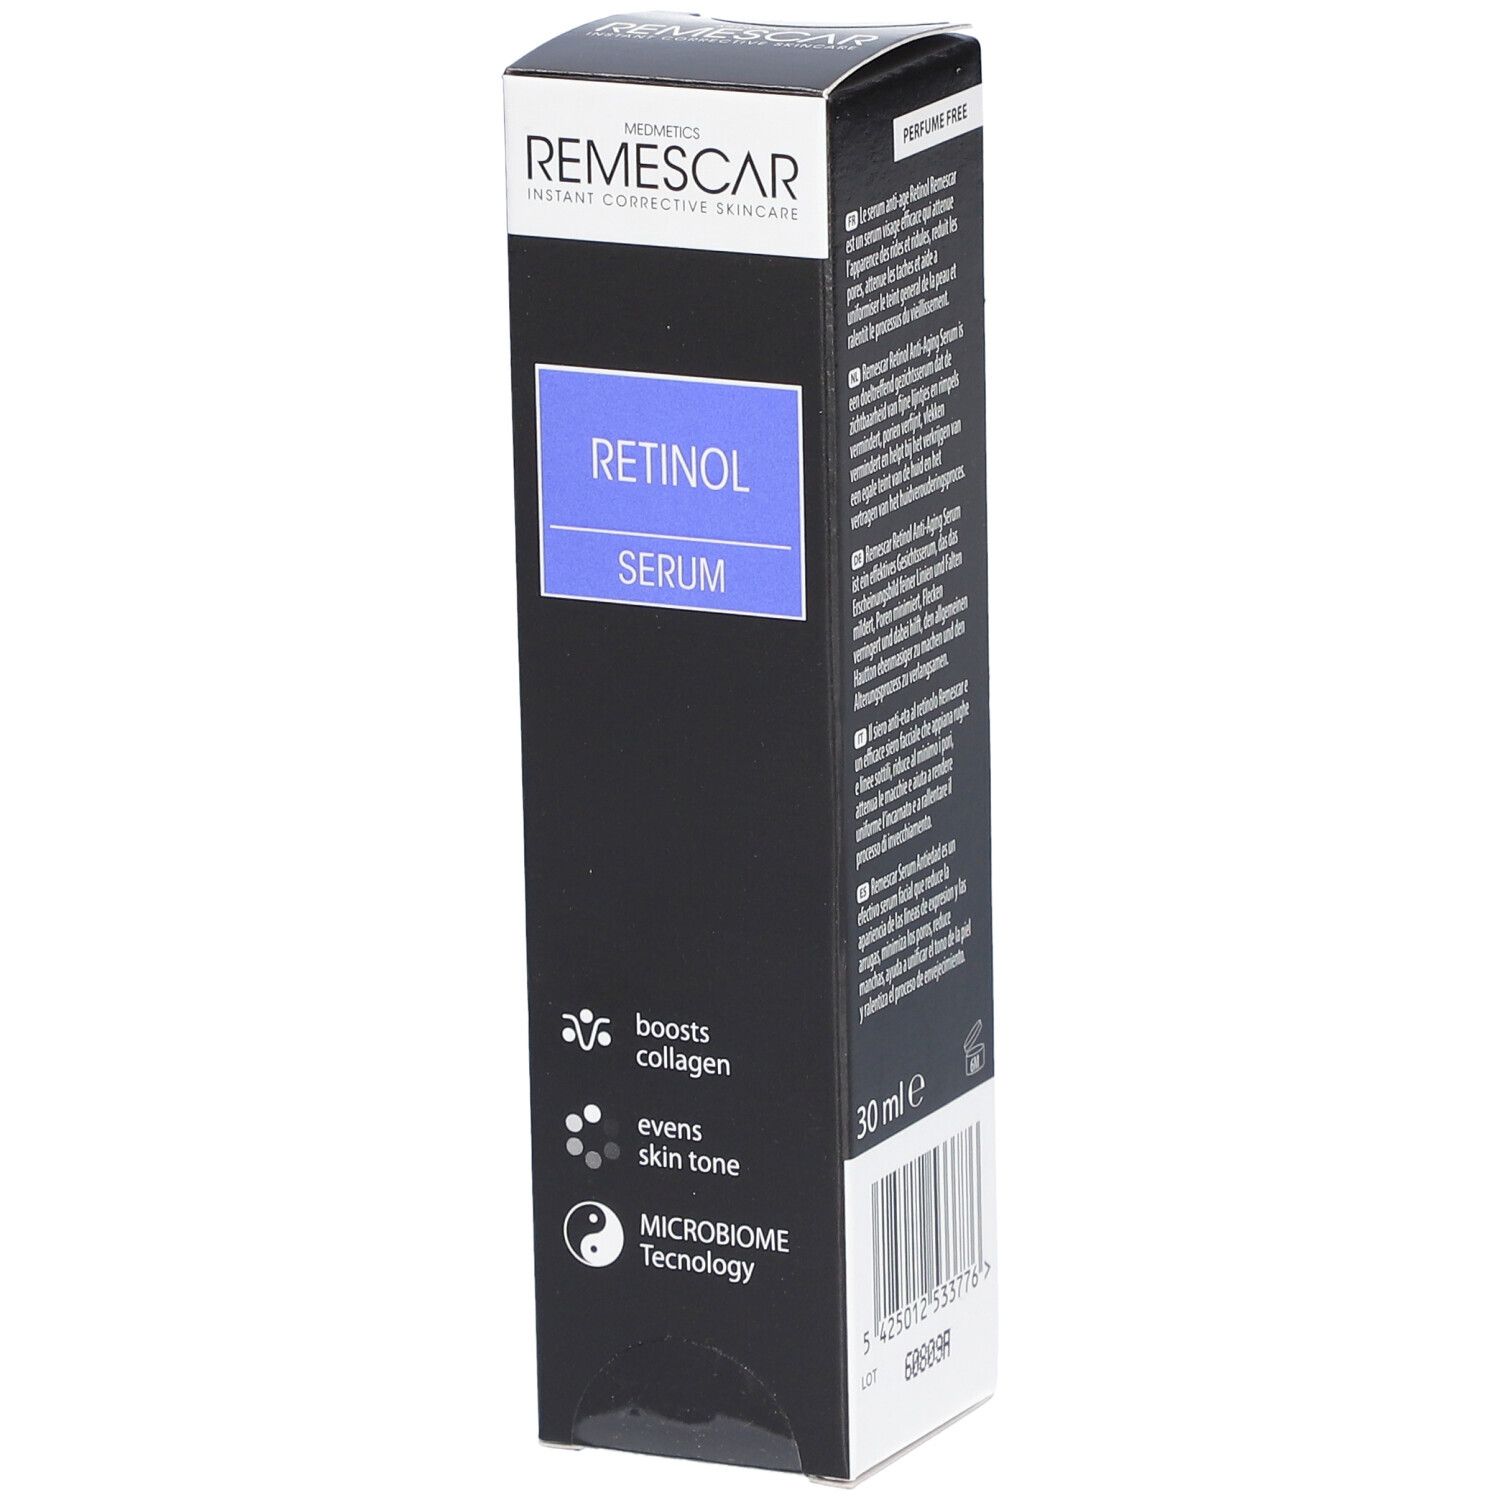 Image of Remescar Anti-Aging Retinol-Serum